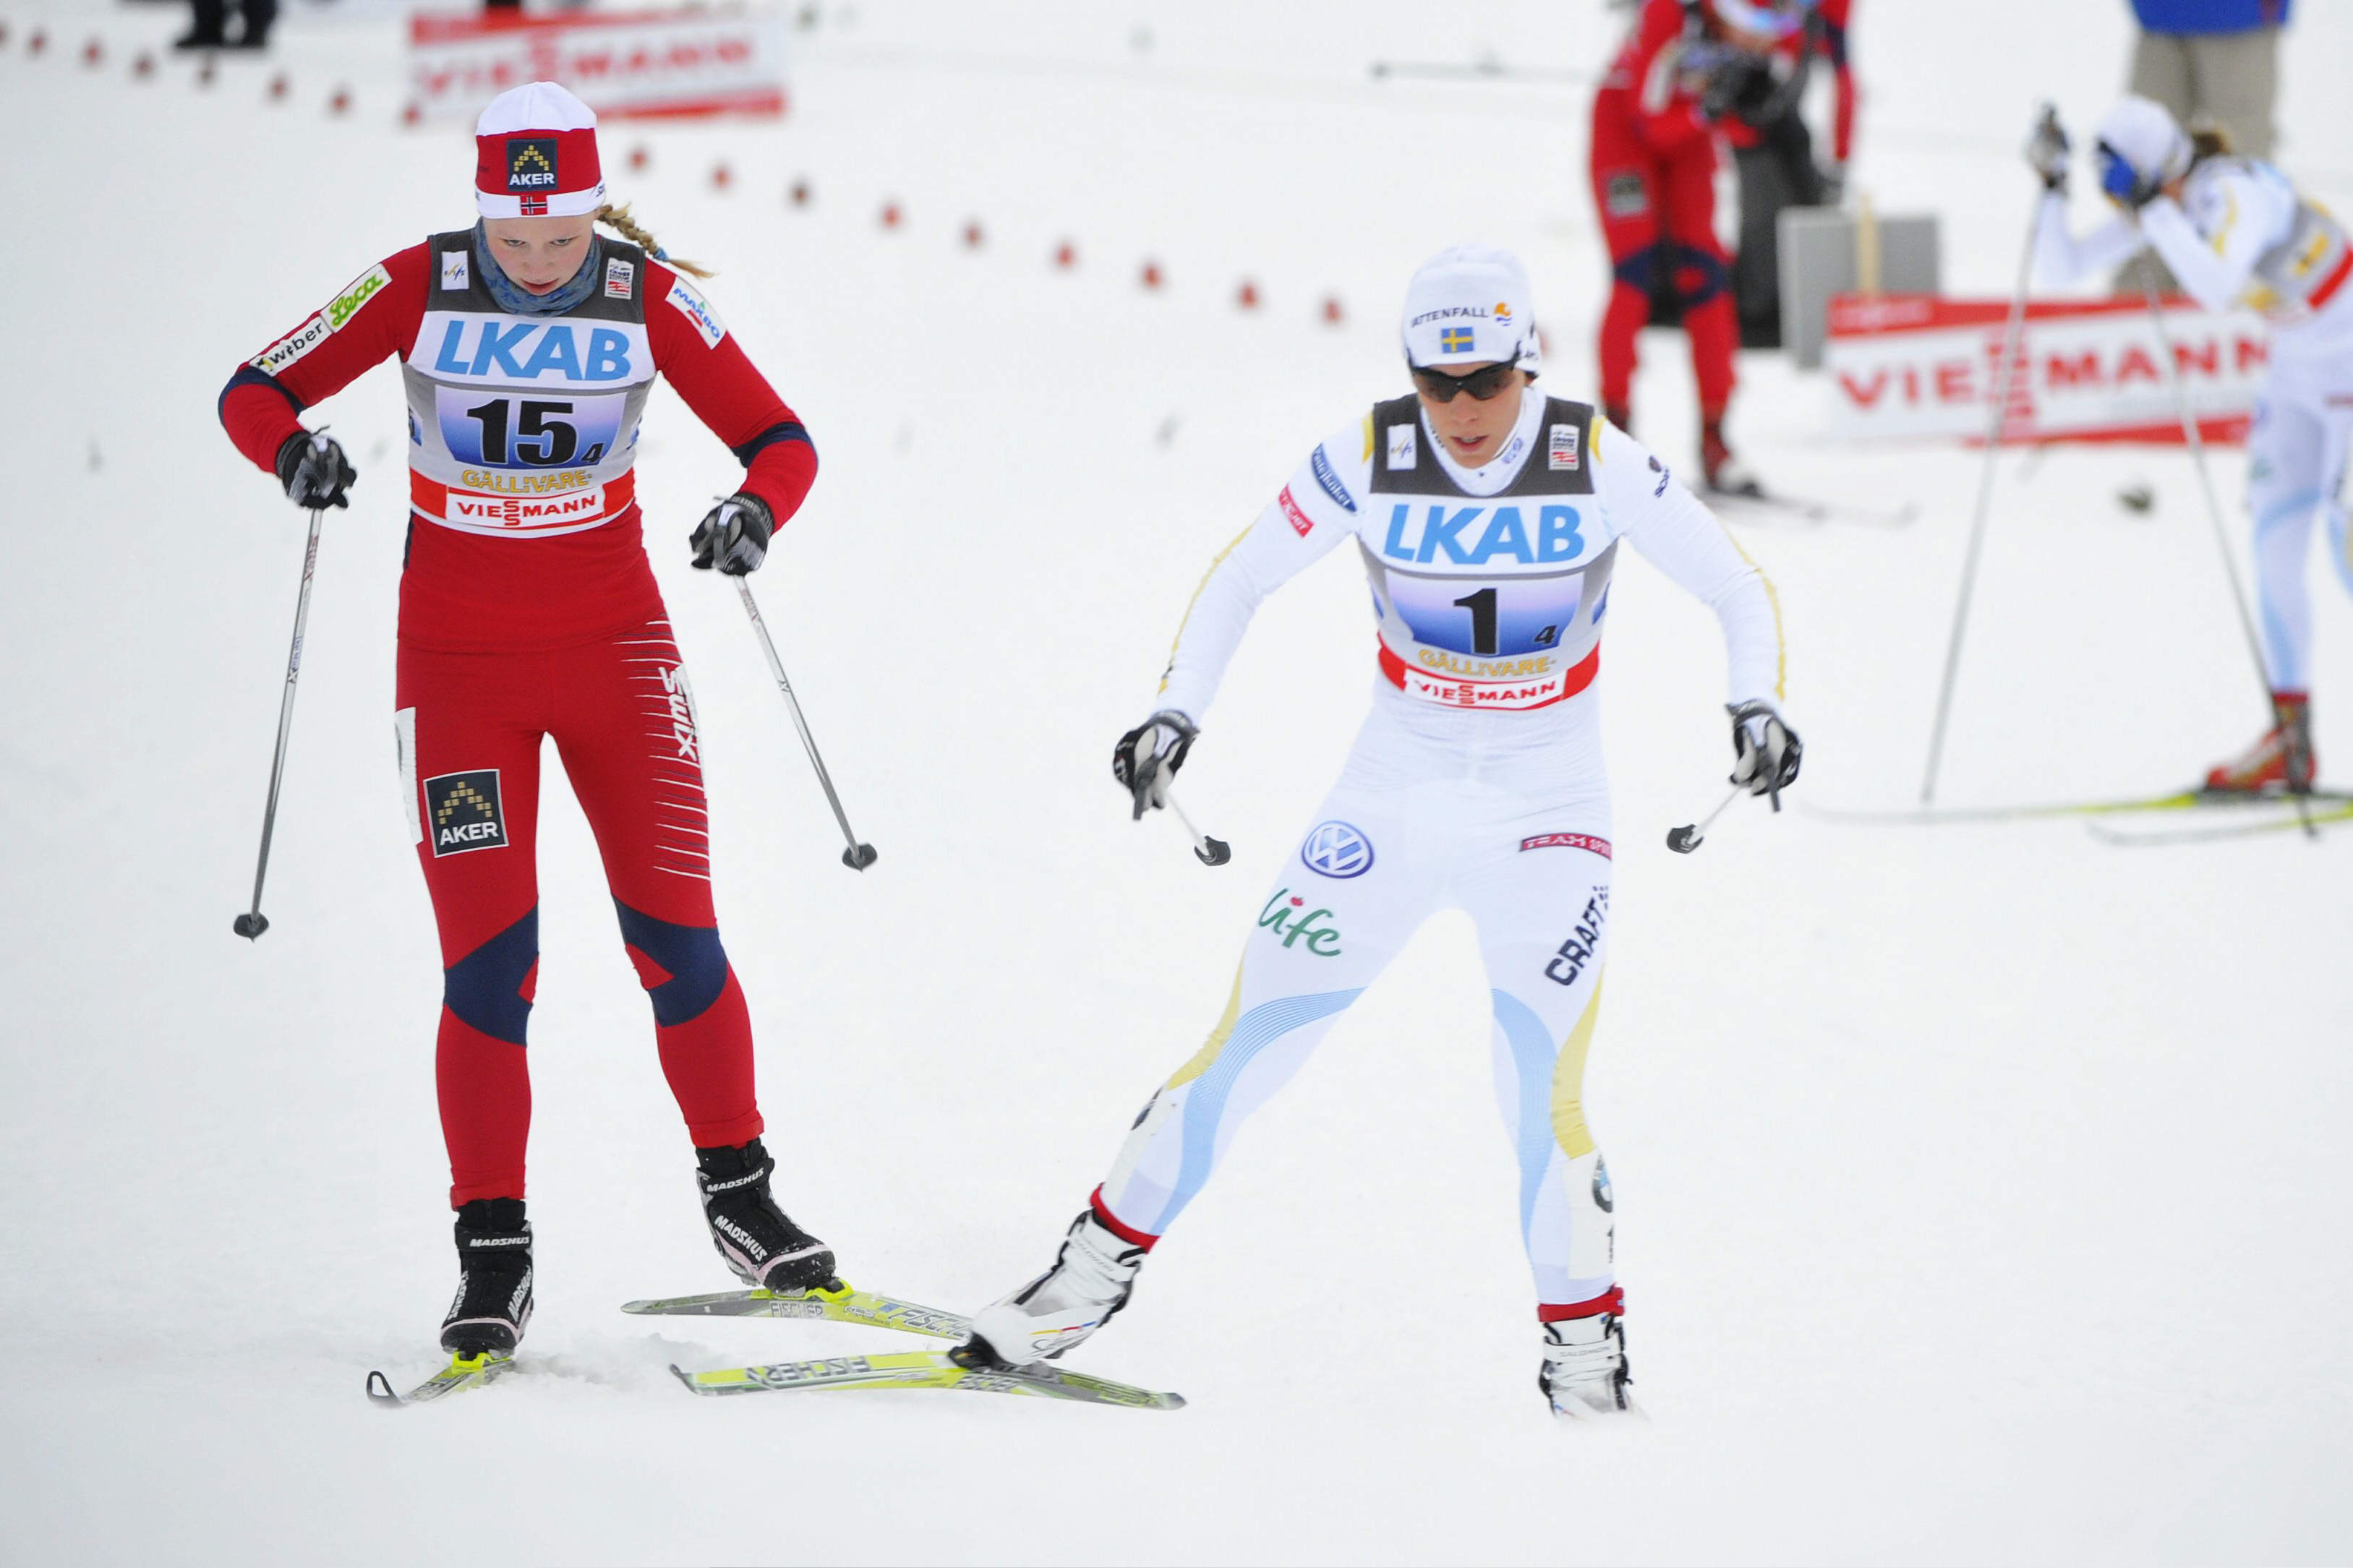 Stafett, Sverige, skidor, Marit Björgren, Norge, Charlotte Kalla